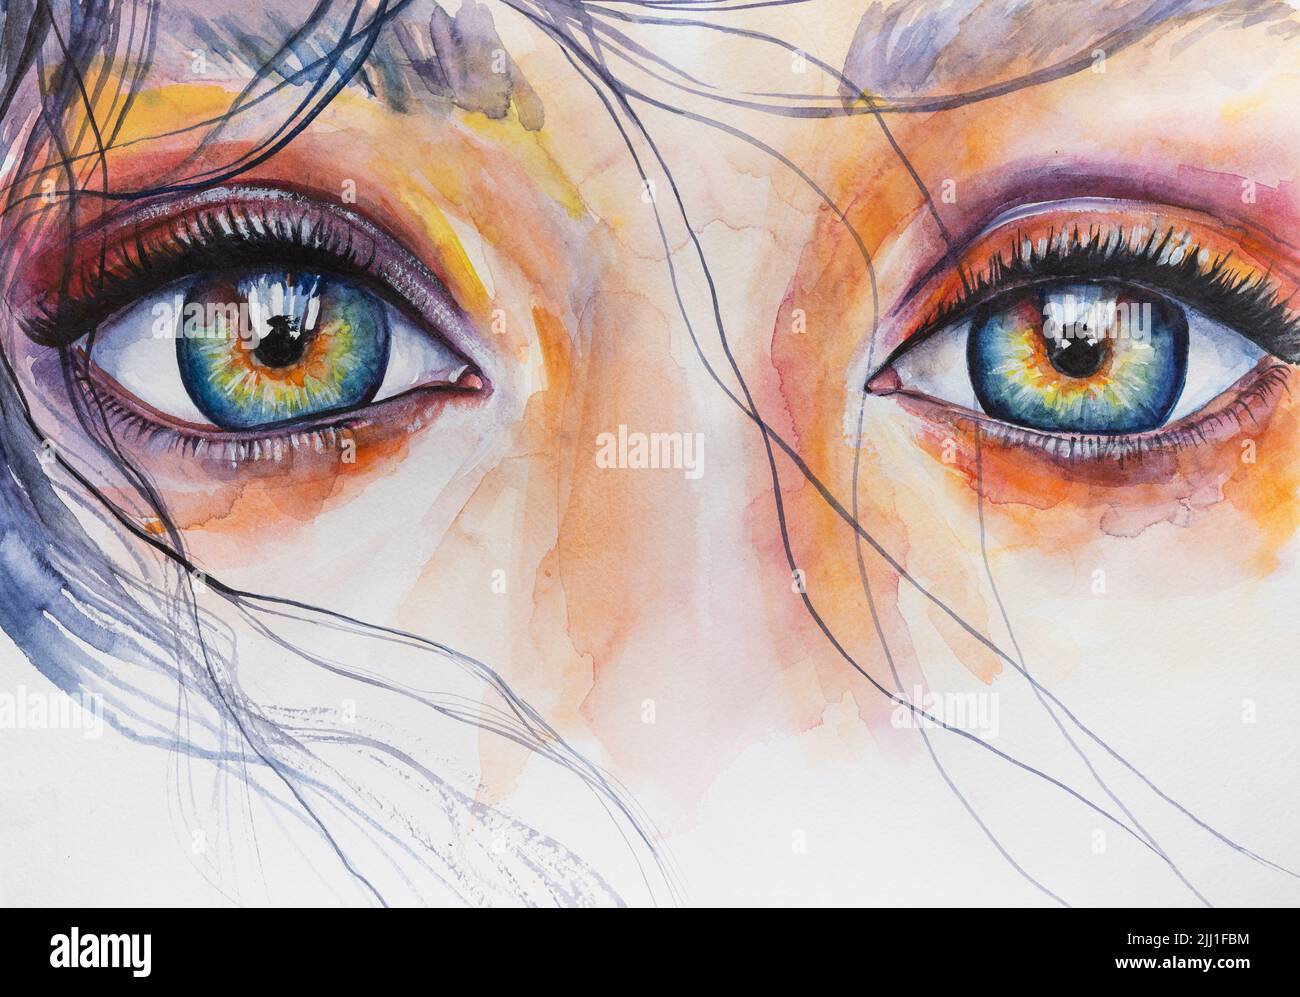 Image abstraite conceptuelle de l'œil de Handmad. Aquarelle portrait de femme. Peinture dans des couleurs colorées. Résumé conceptuel de Banque D'Images